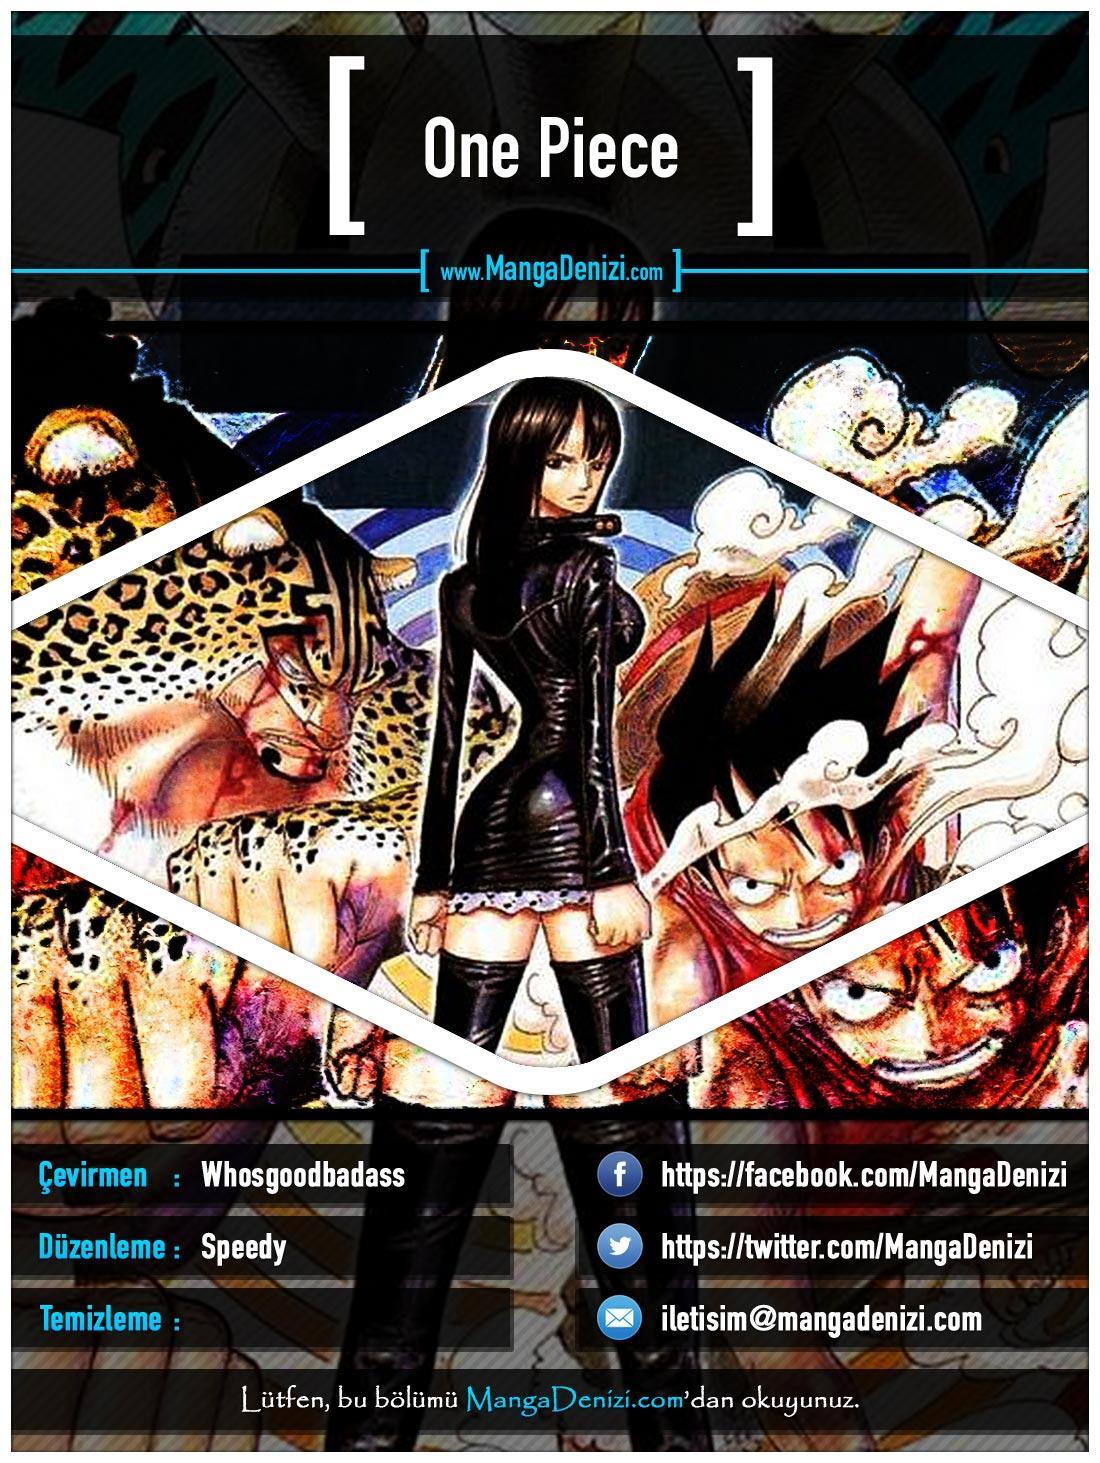 One Piece [Renkli] mangasının 0346 bölümünün 1. sayfasını okuyorsunuz.